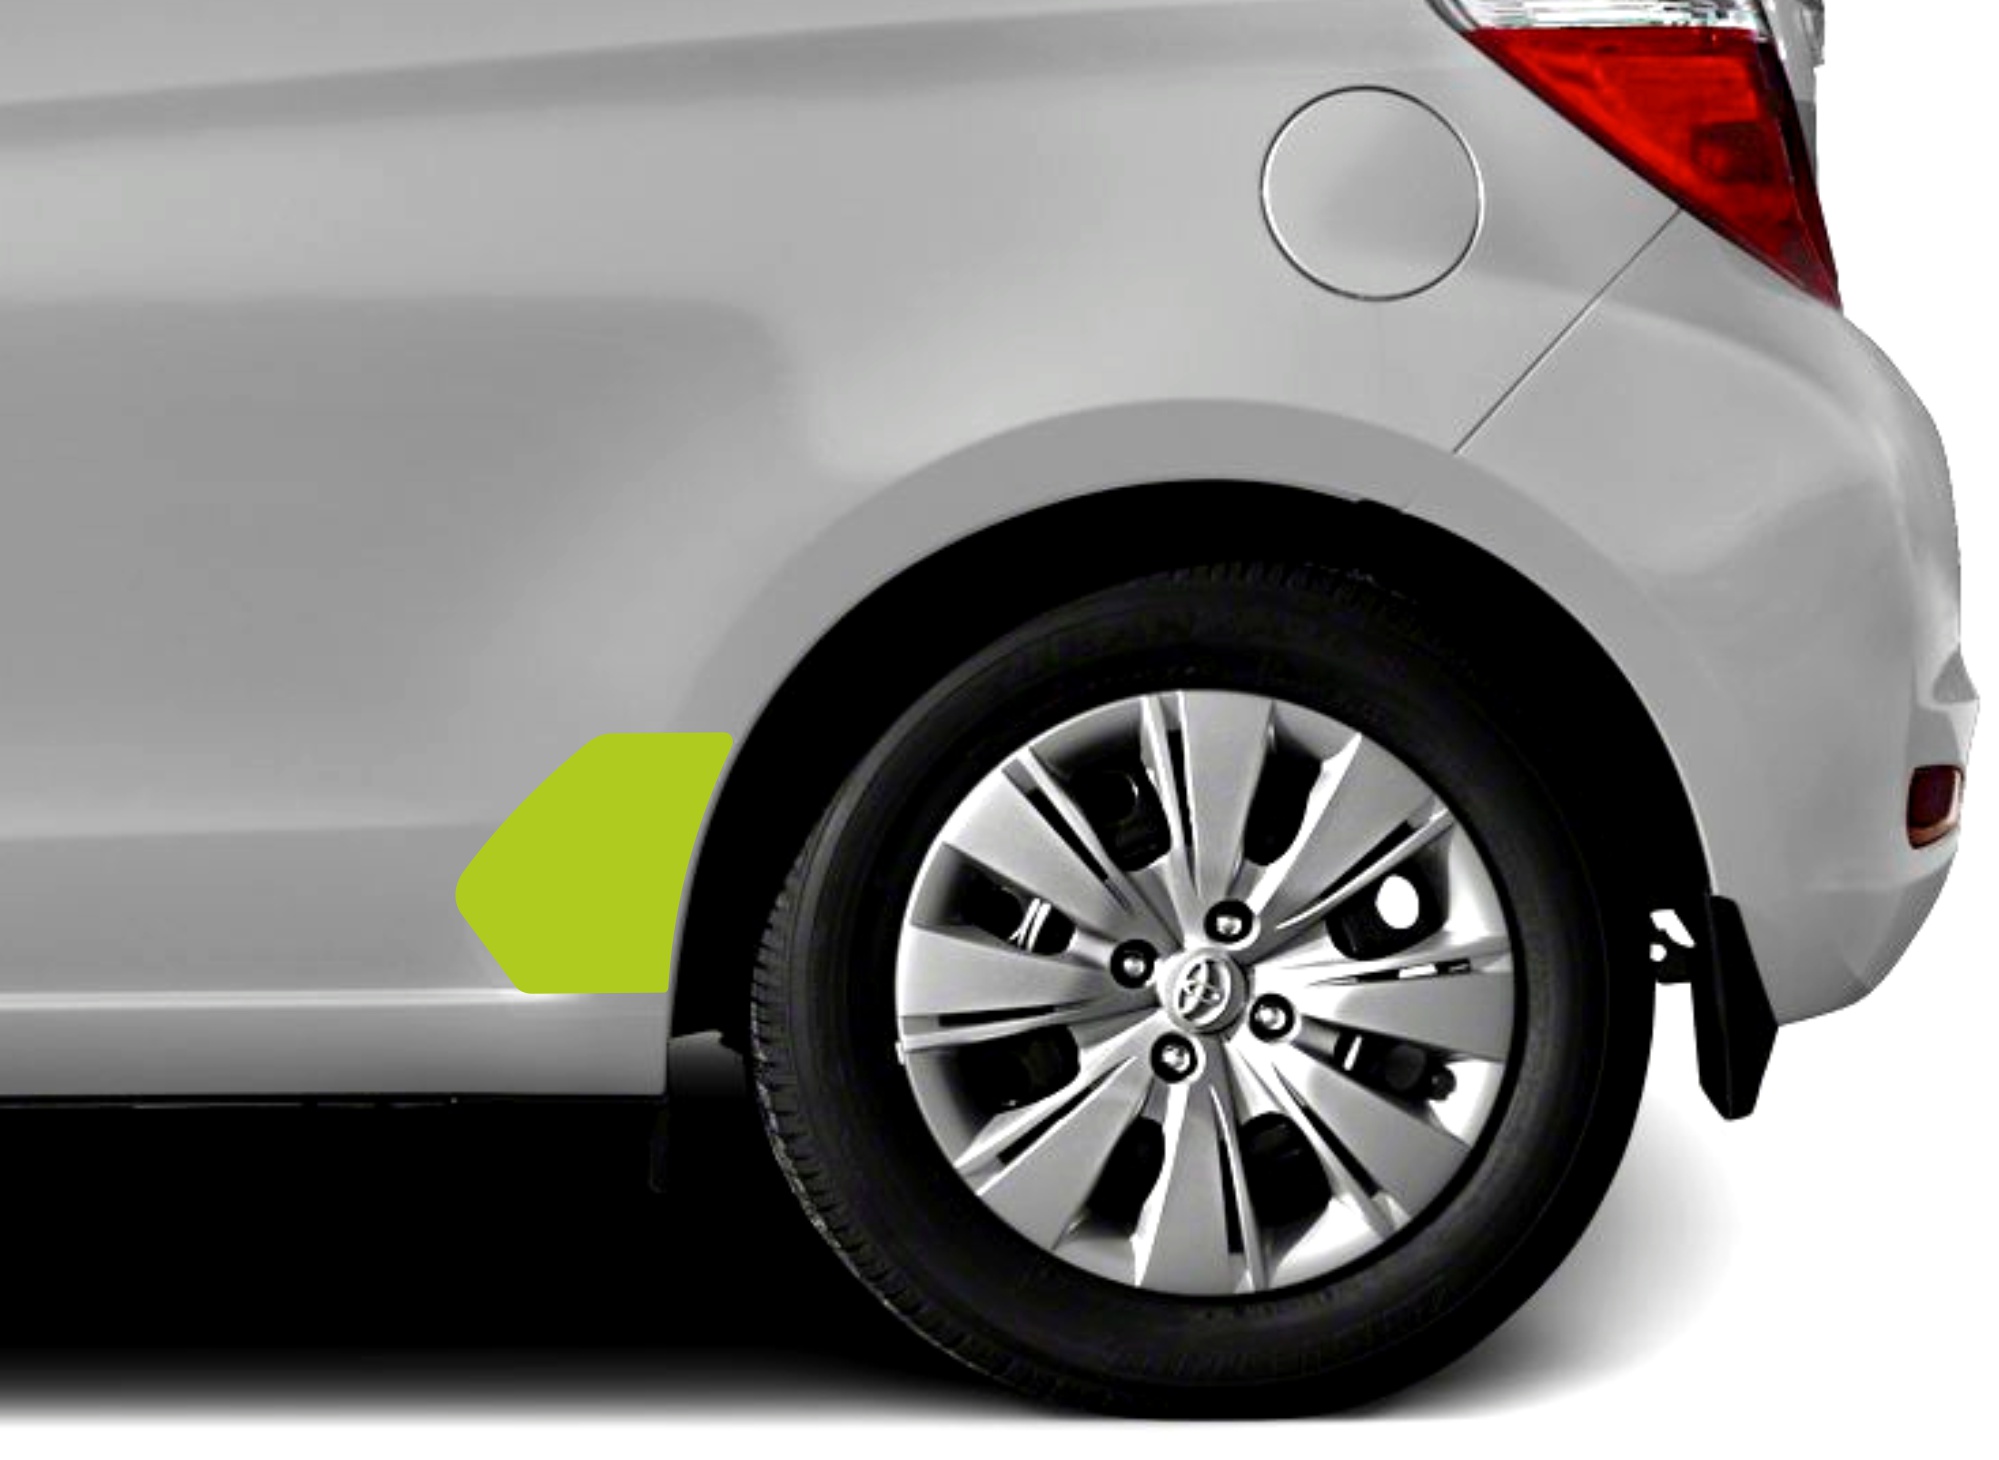 Toyota Yaris naklejki decals stripes sticker aufkleber nalepky folie ochronne protection film